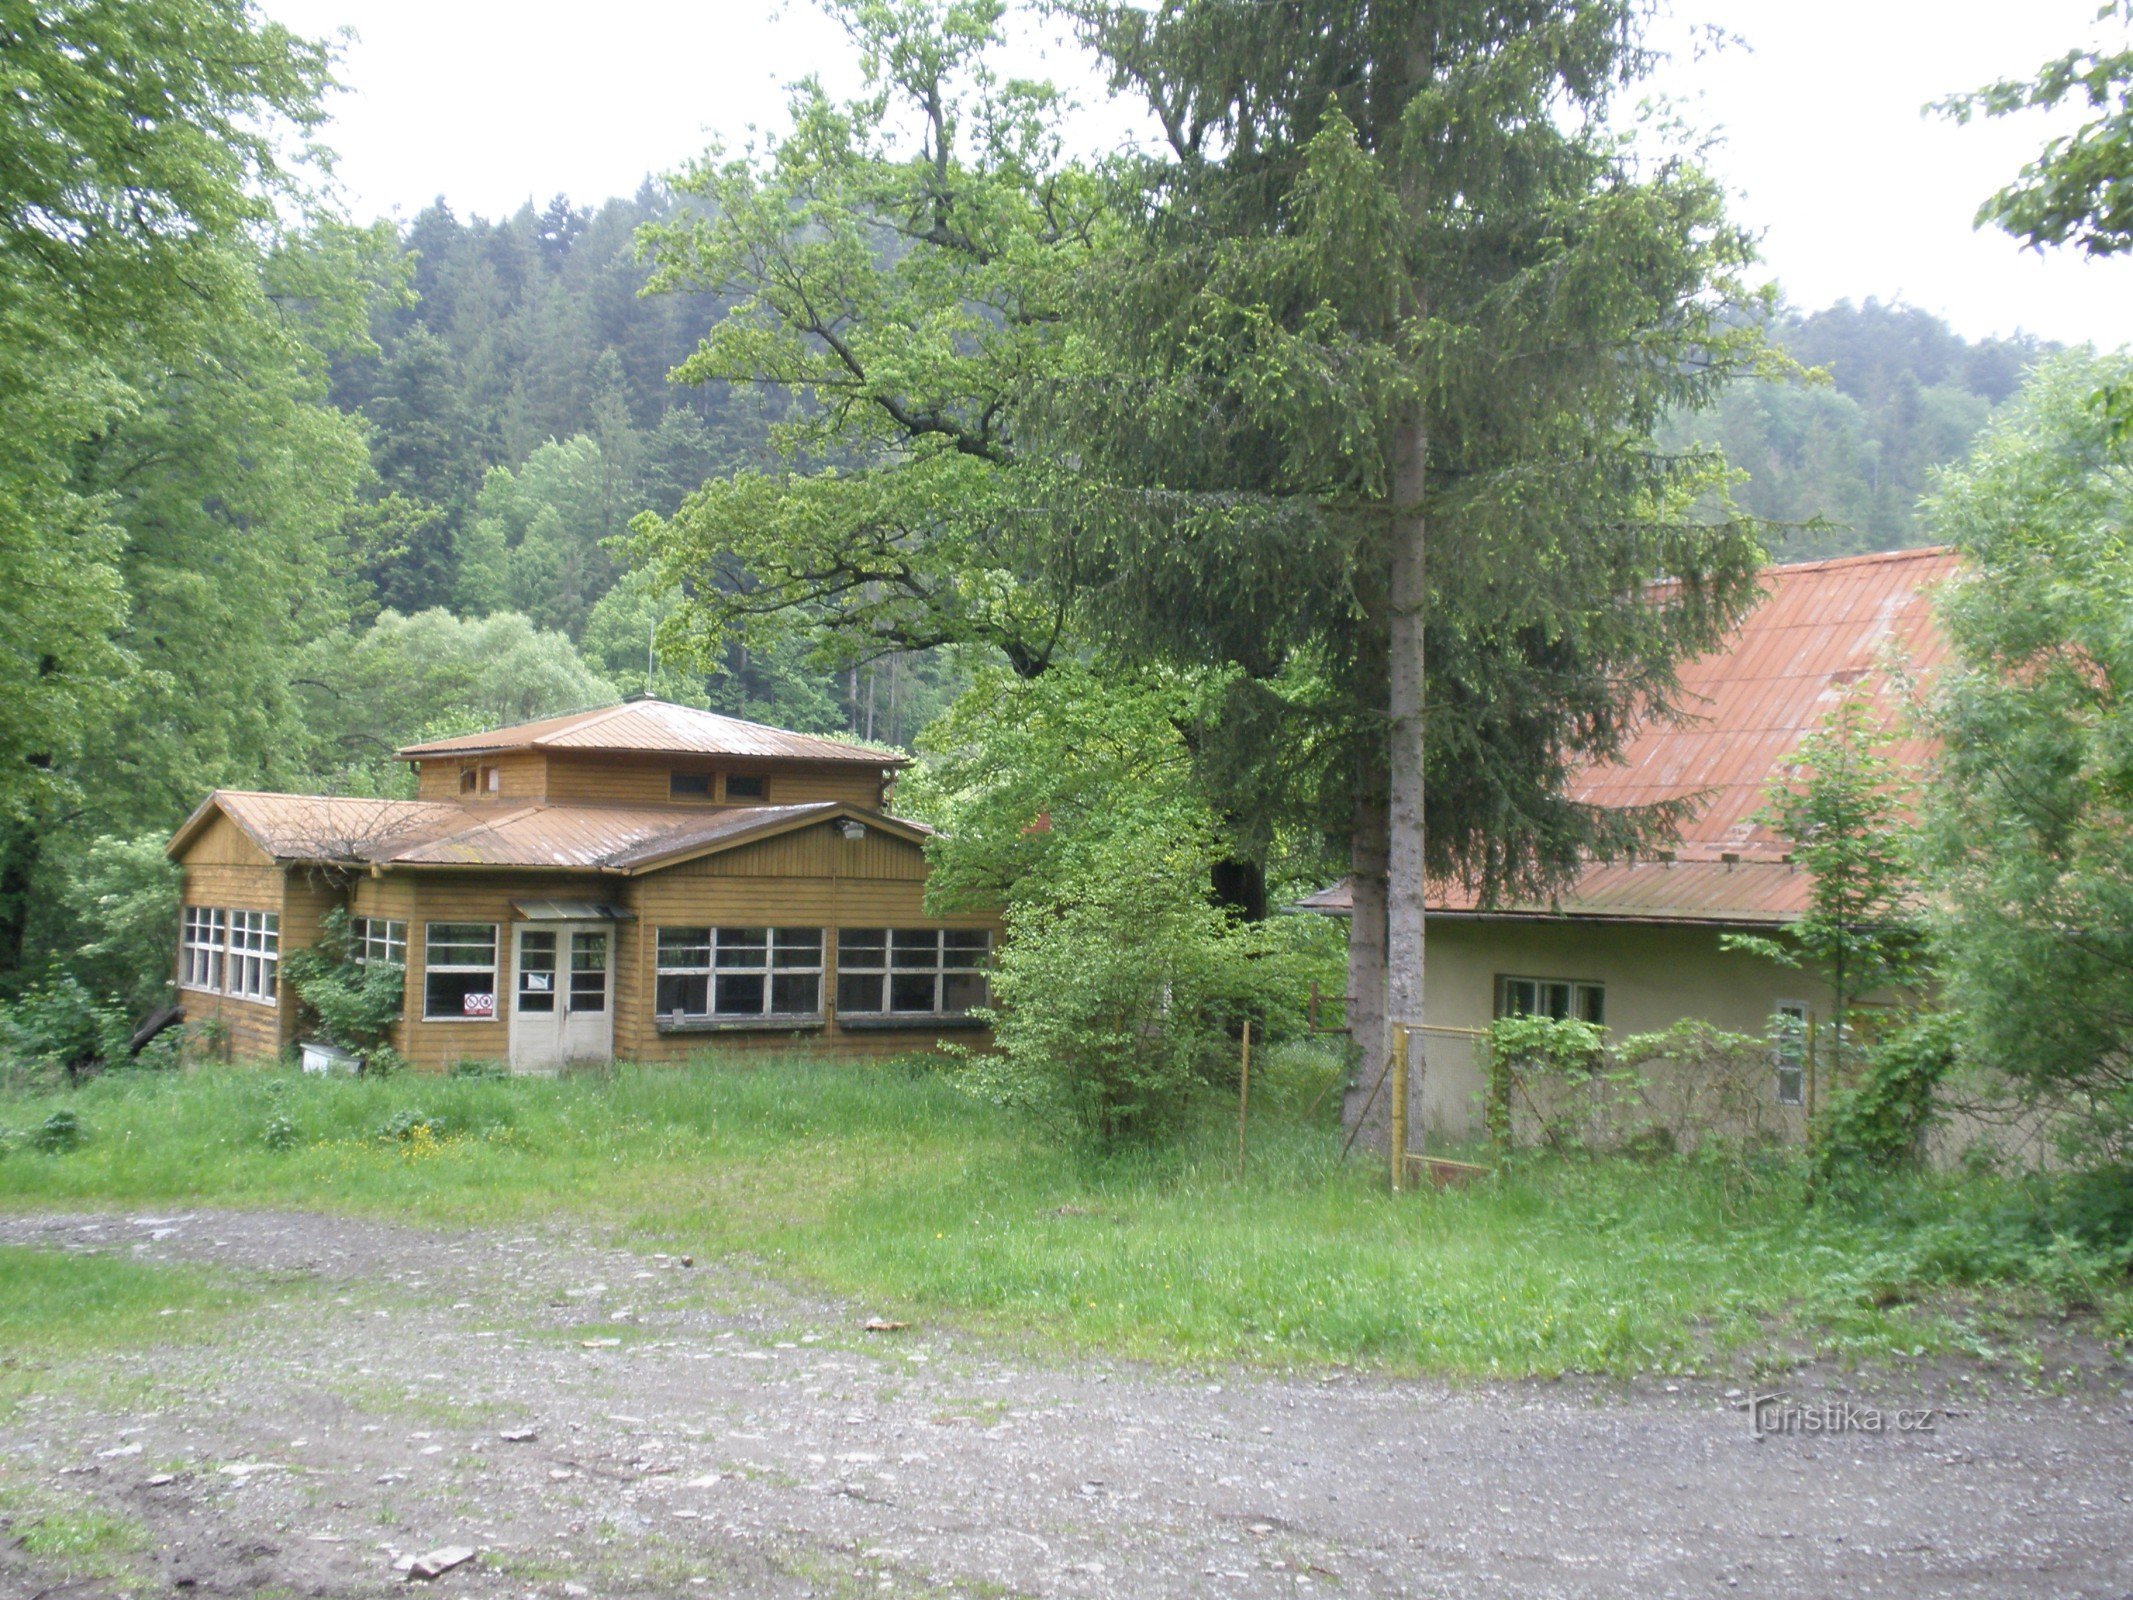 Libavá, centro di formazione Hadinka